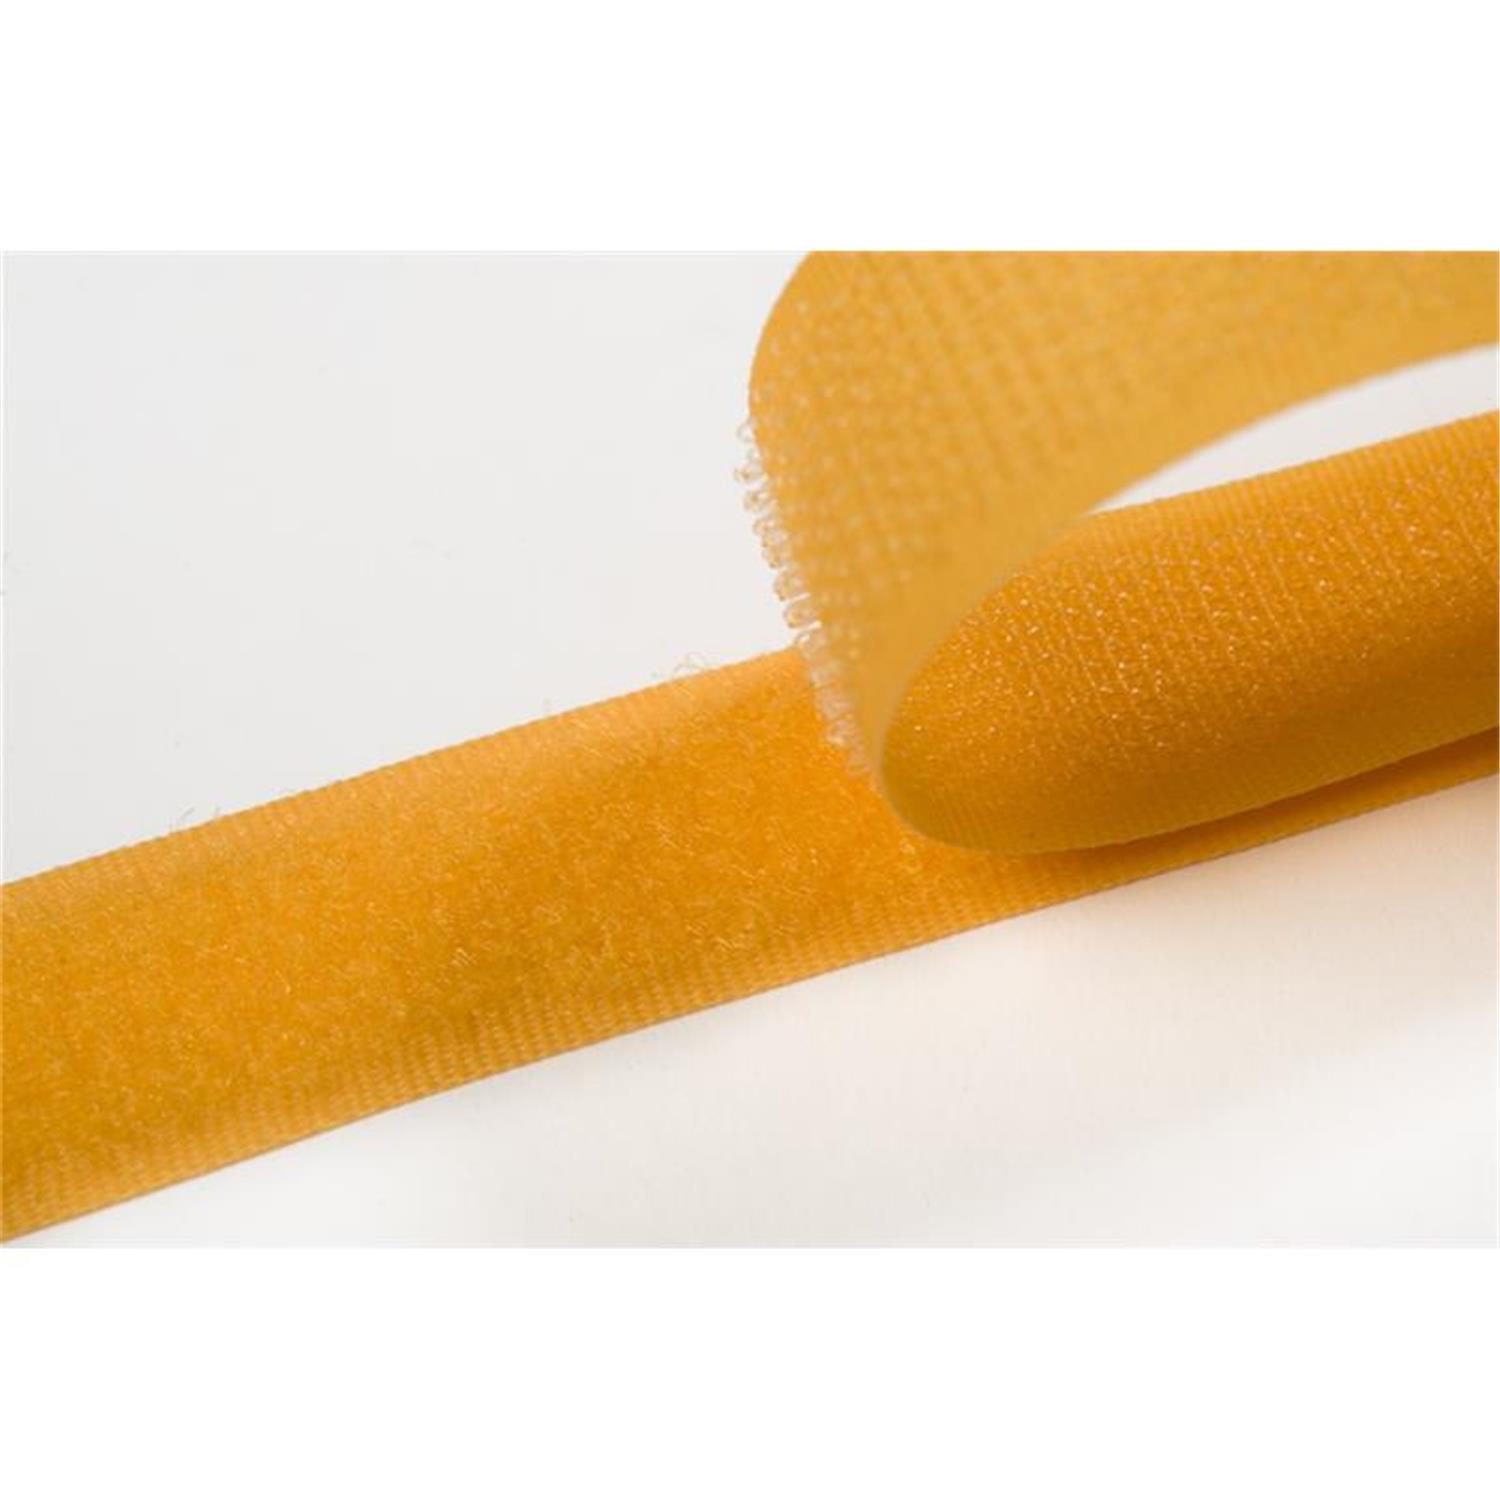 Klettband zum aufnähen, 50 mm, gelb #05 4 Meter